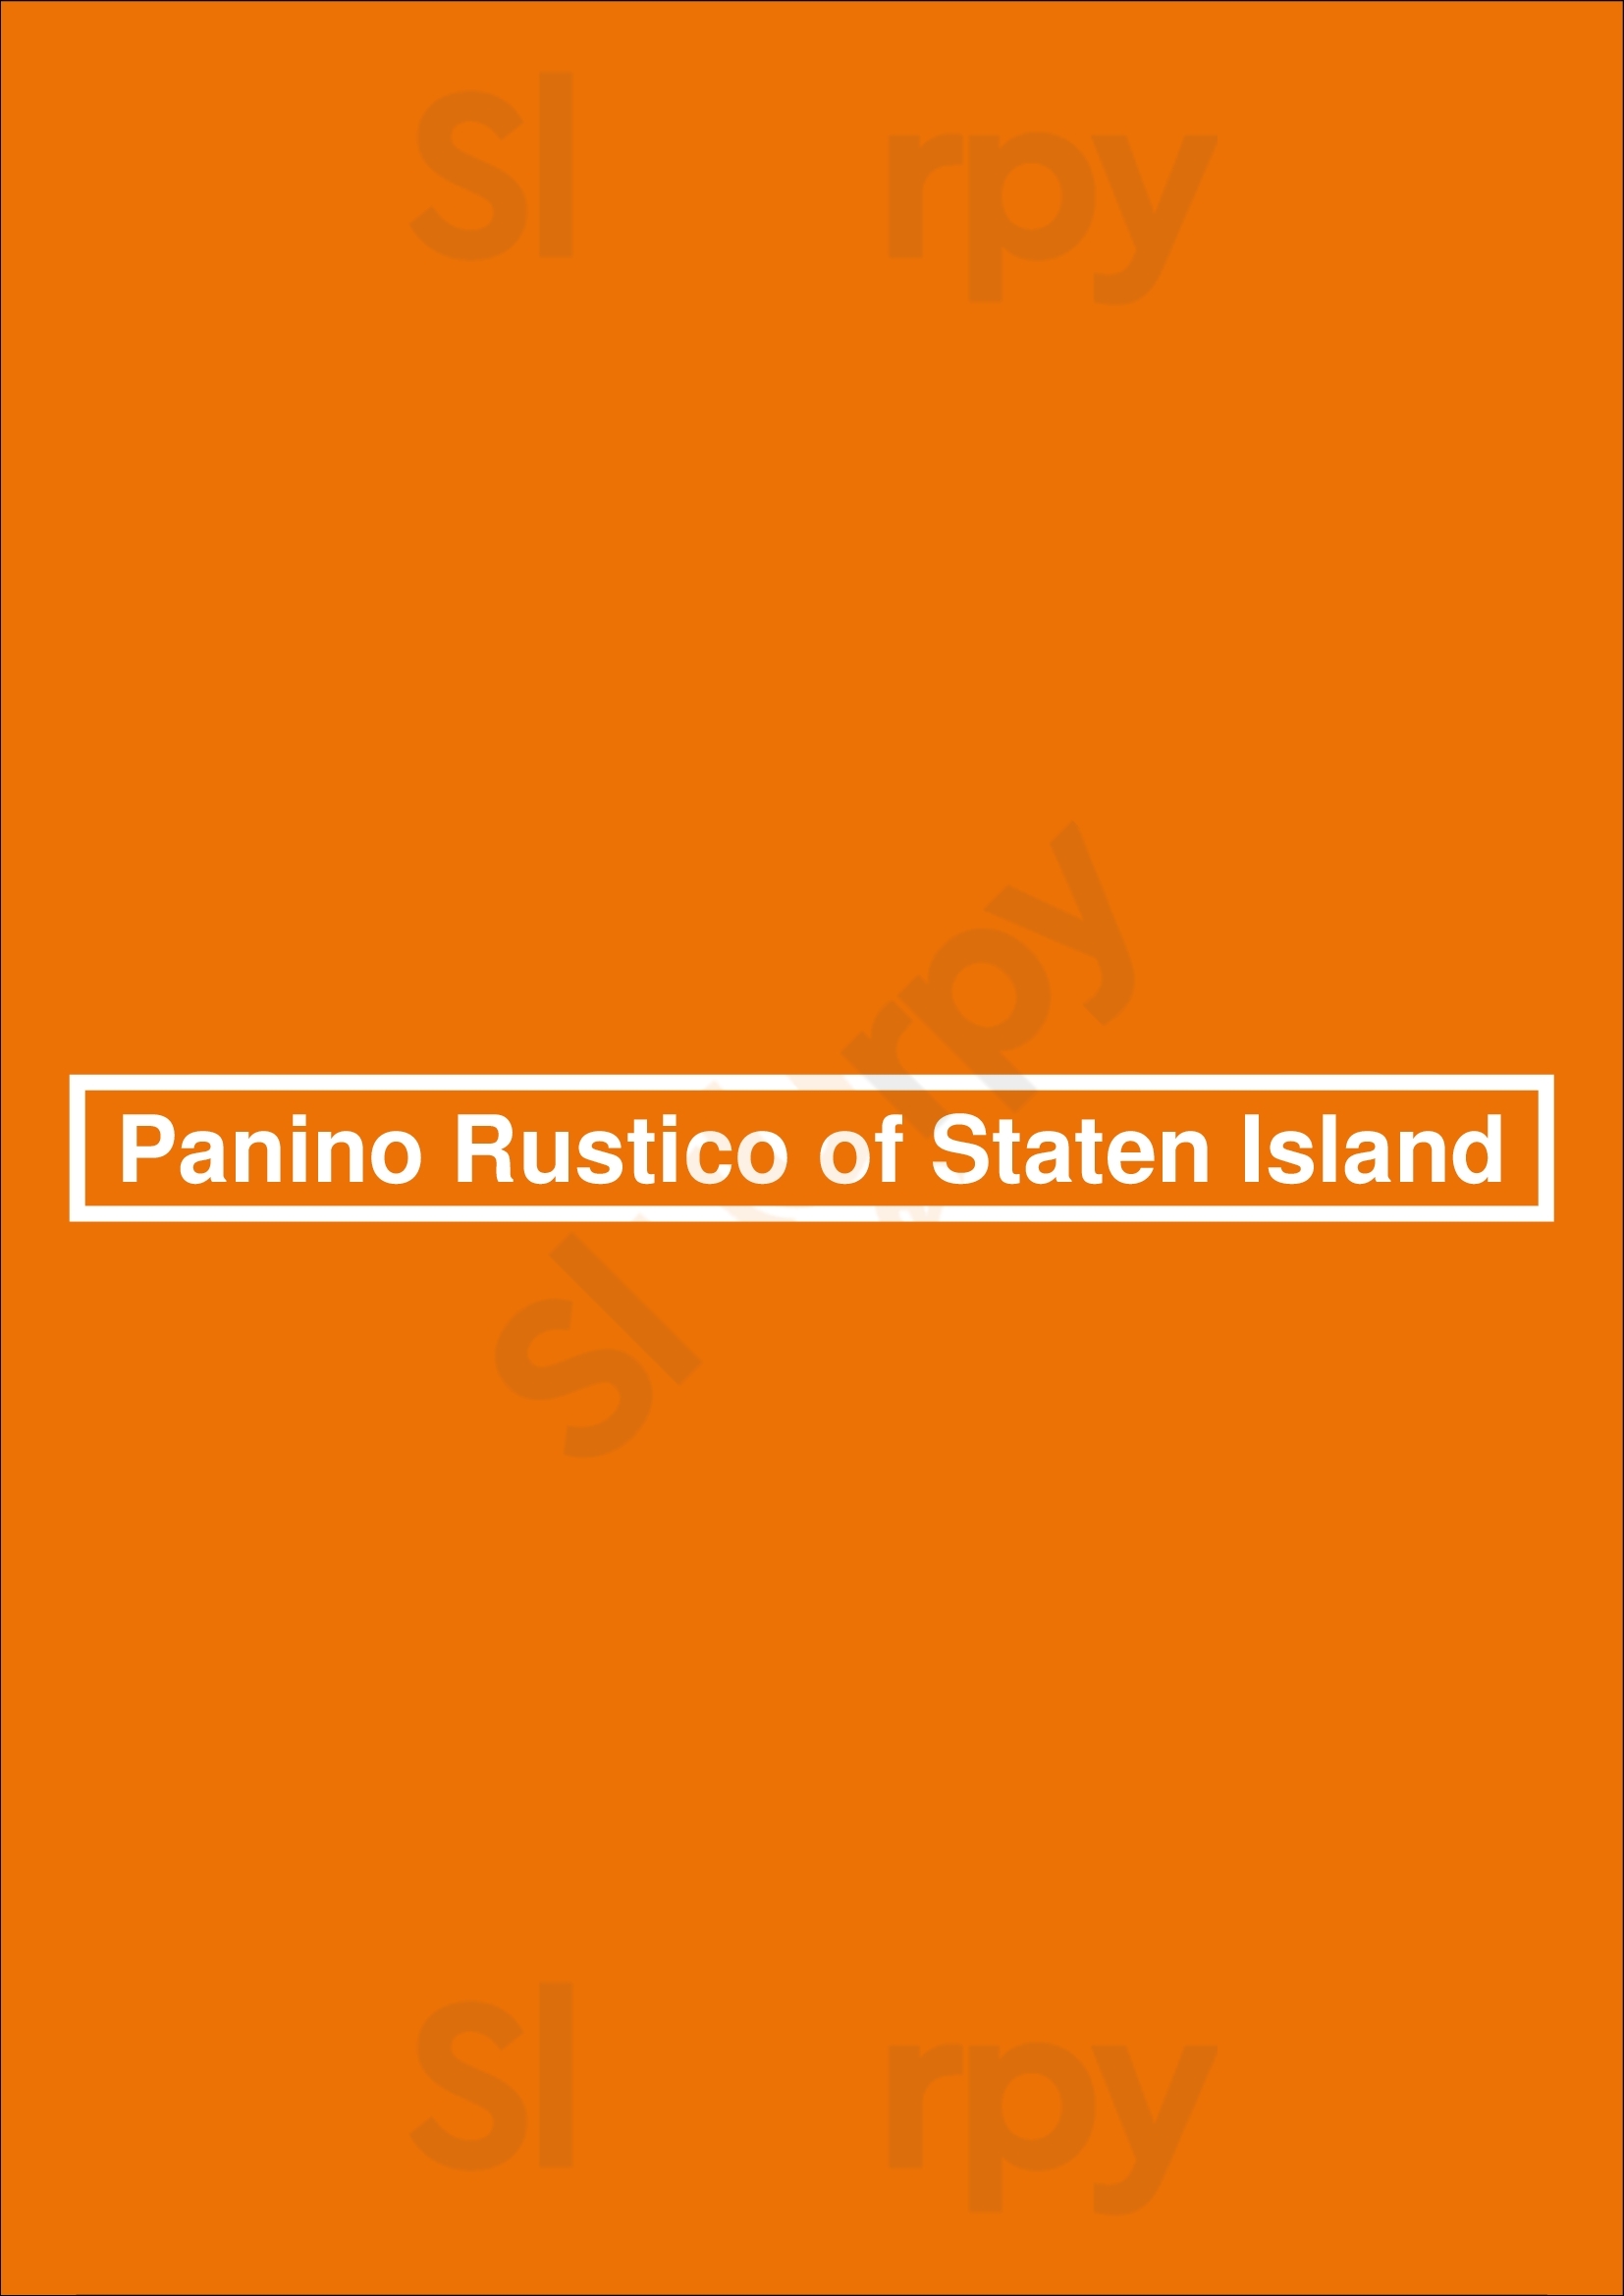 Panino Rustico Staten Island Menu - 1